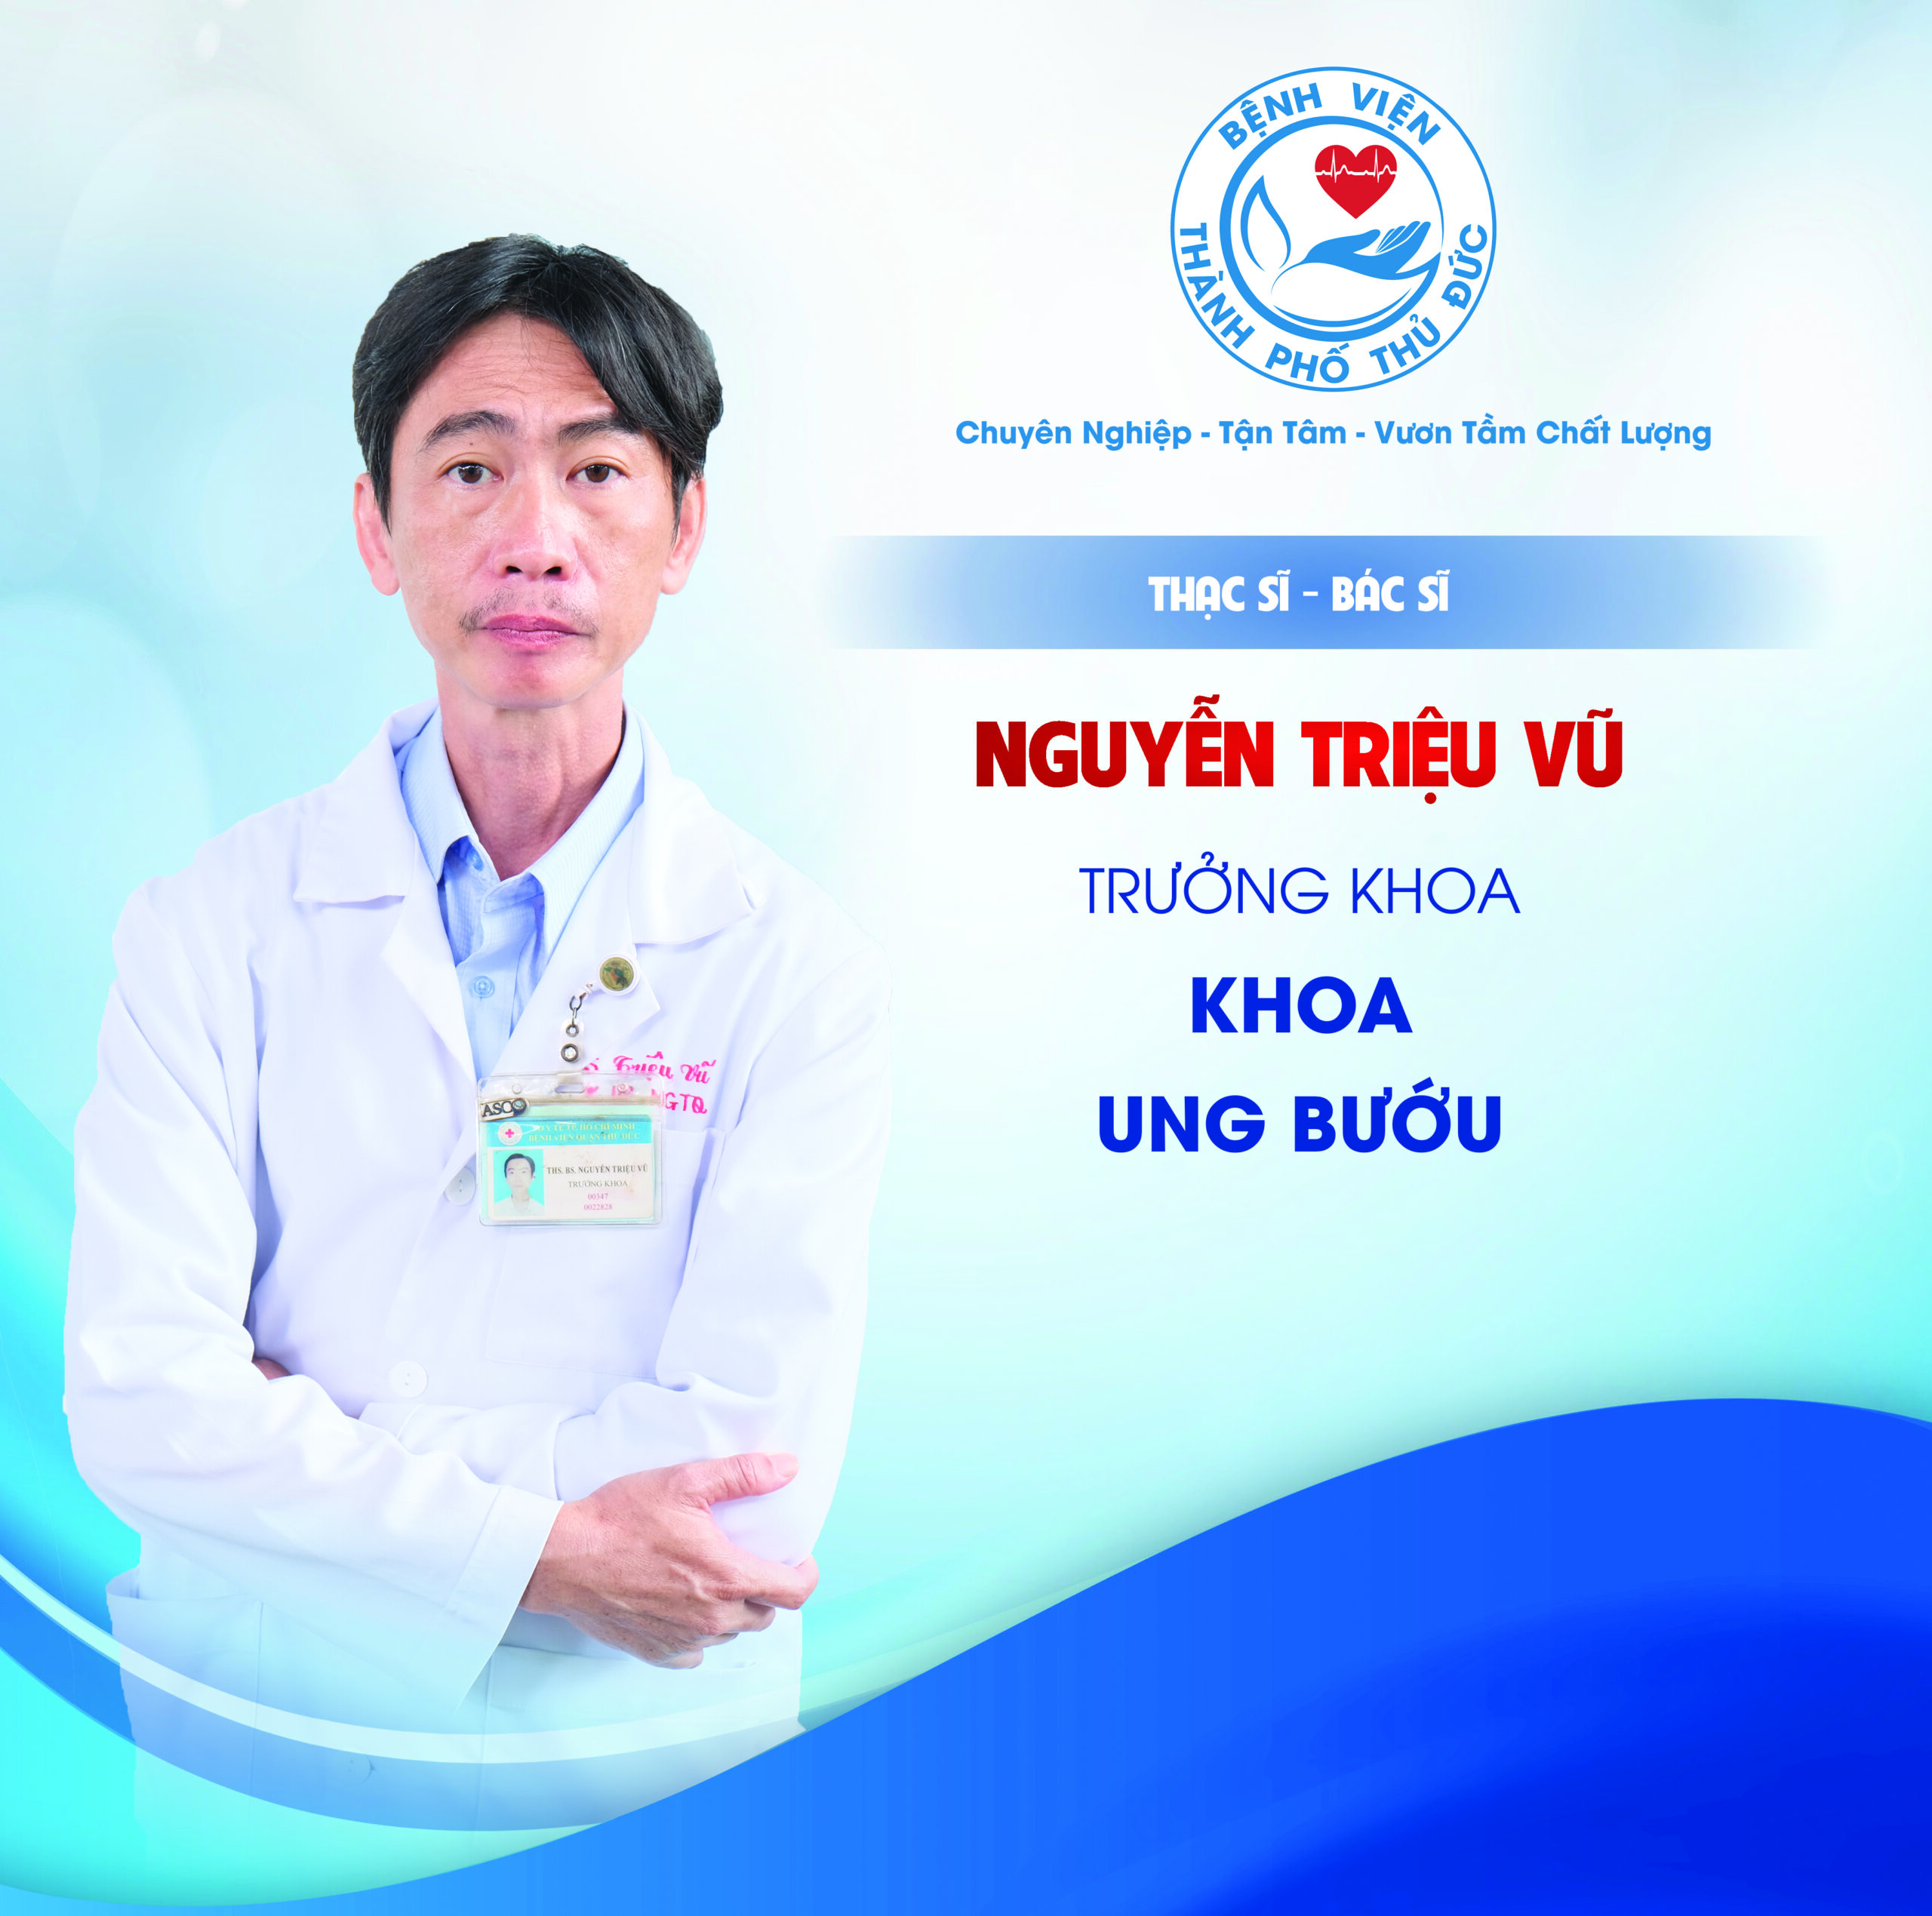 ThS.BS Nguyễn Triệu Vũ - Trưởng khoa Ung bướu